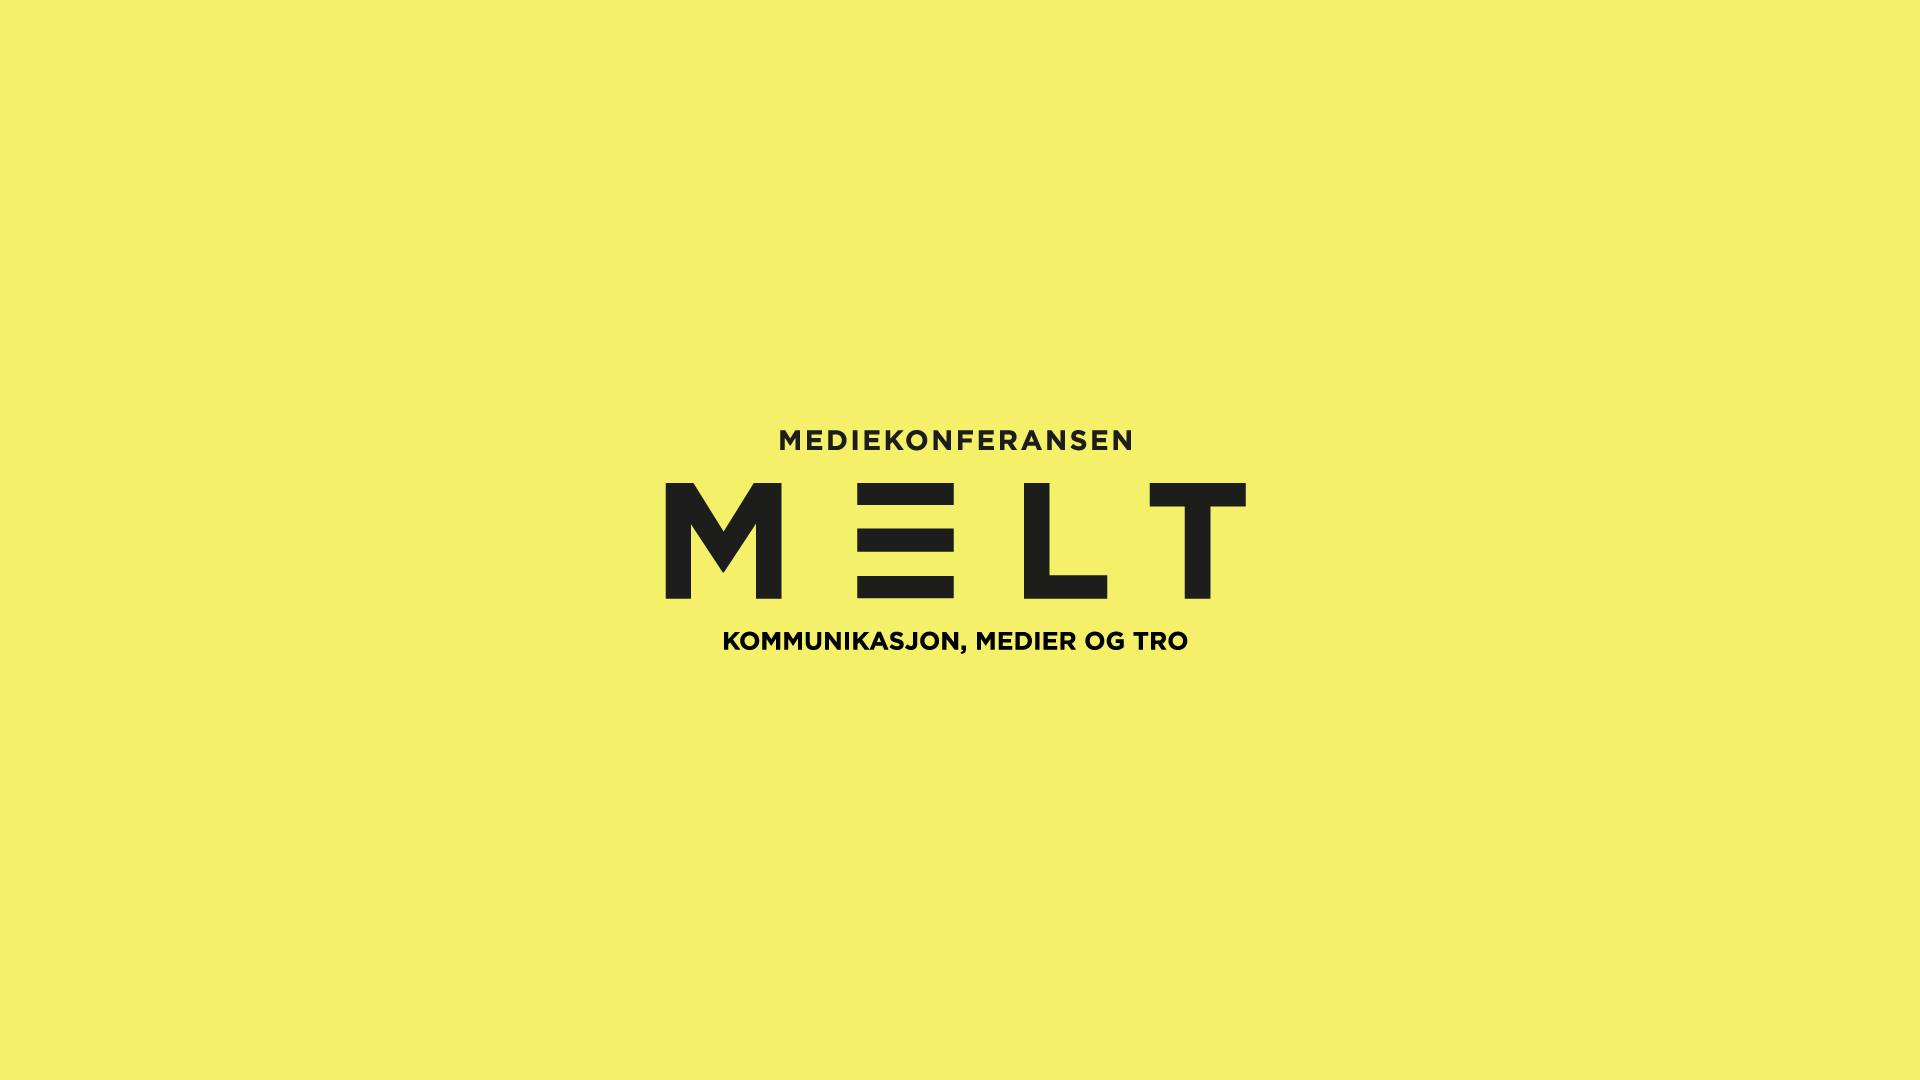 Blir du med på Mediekonferansen MELT